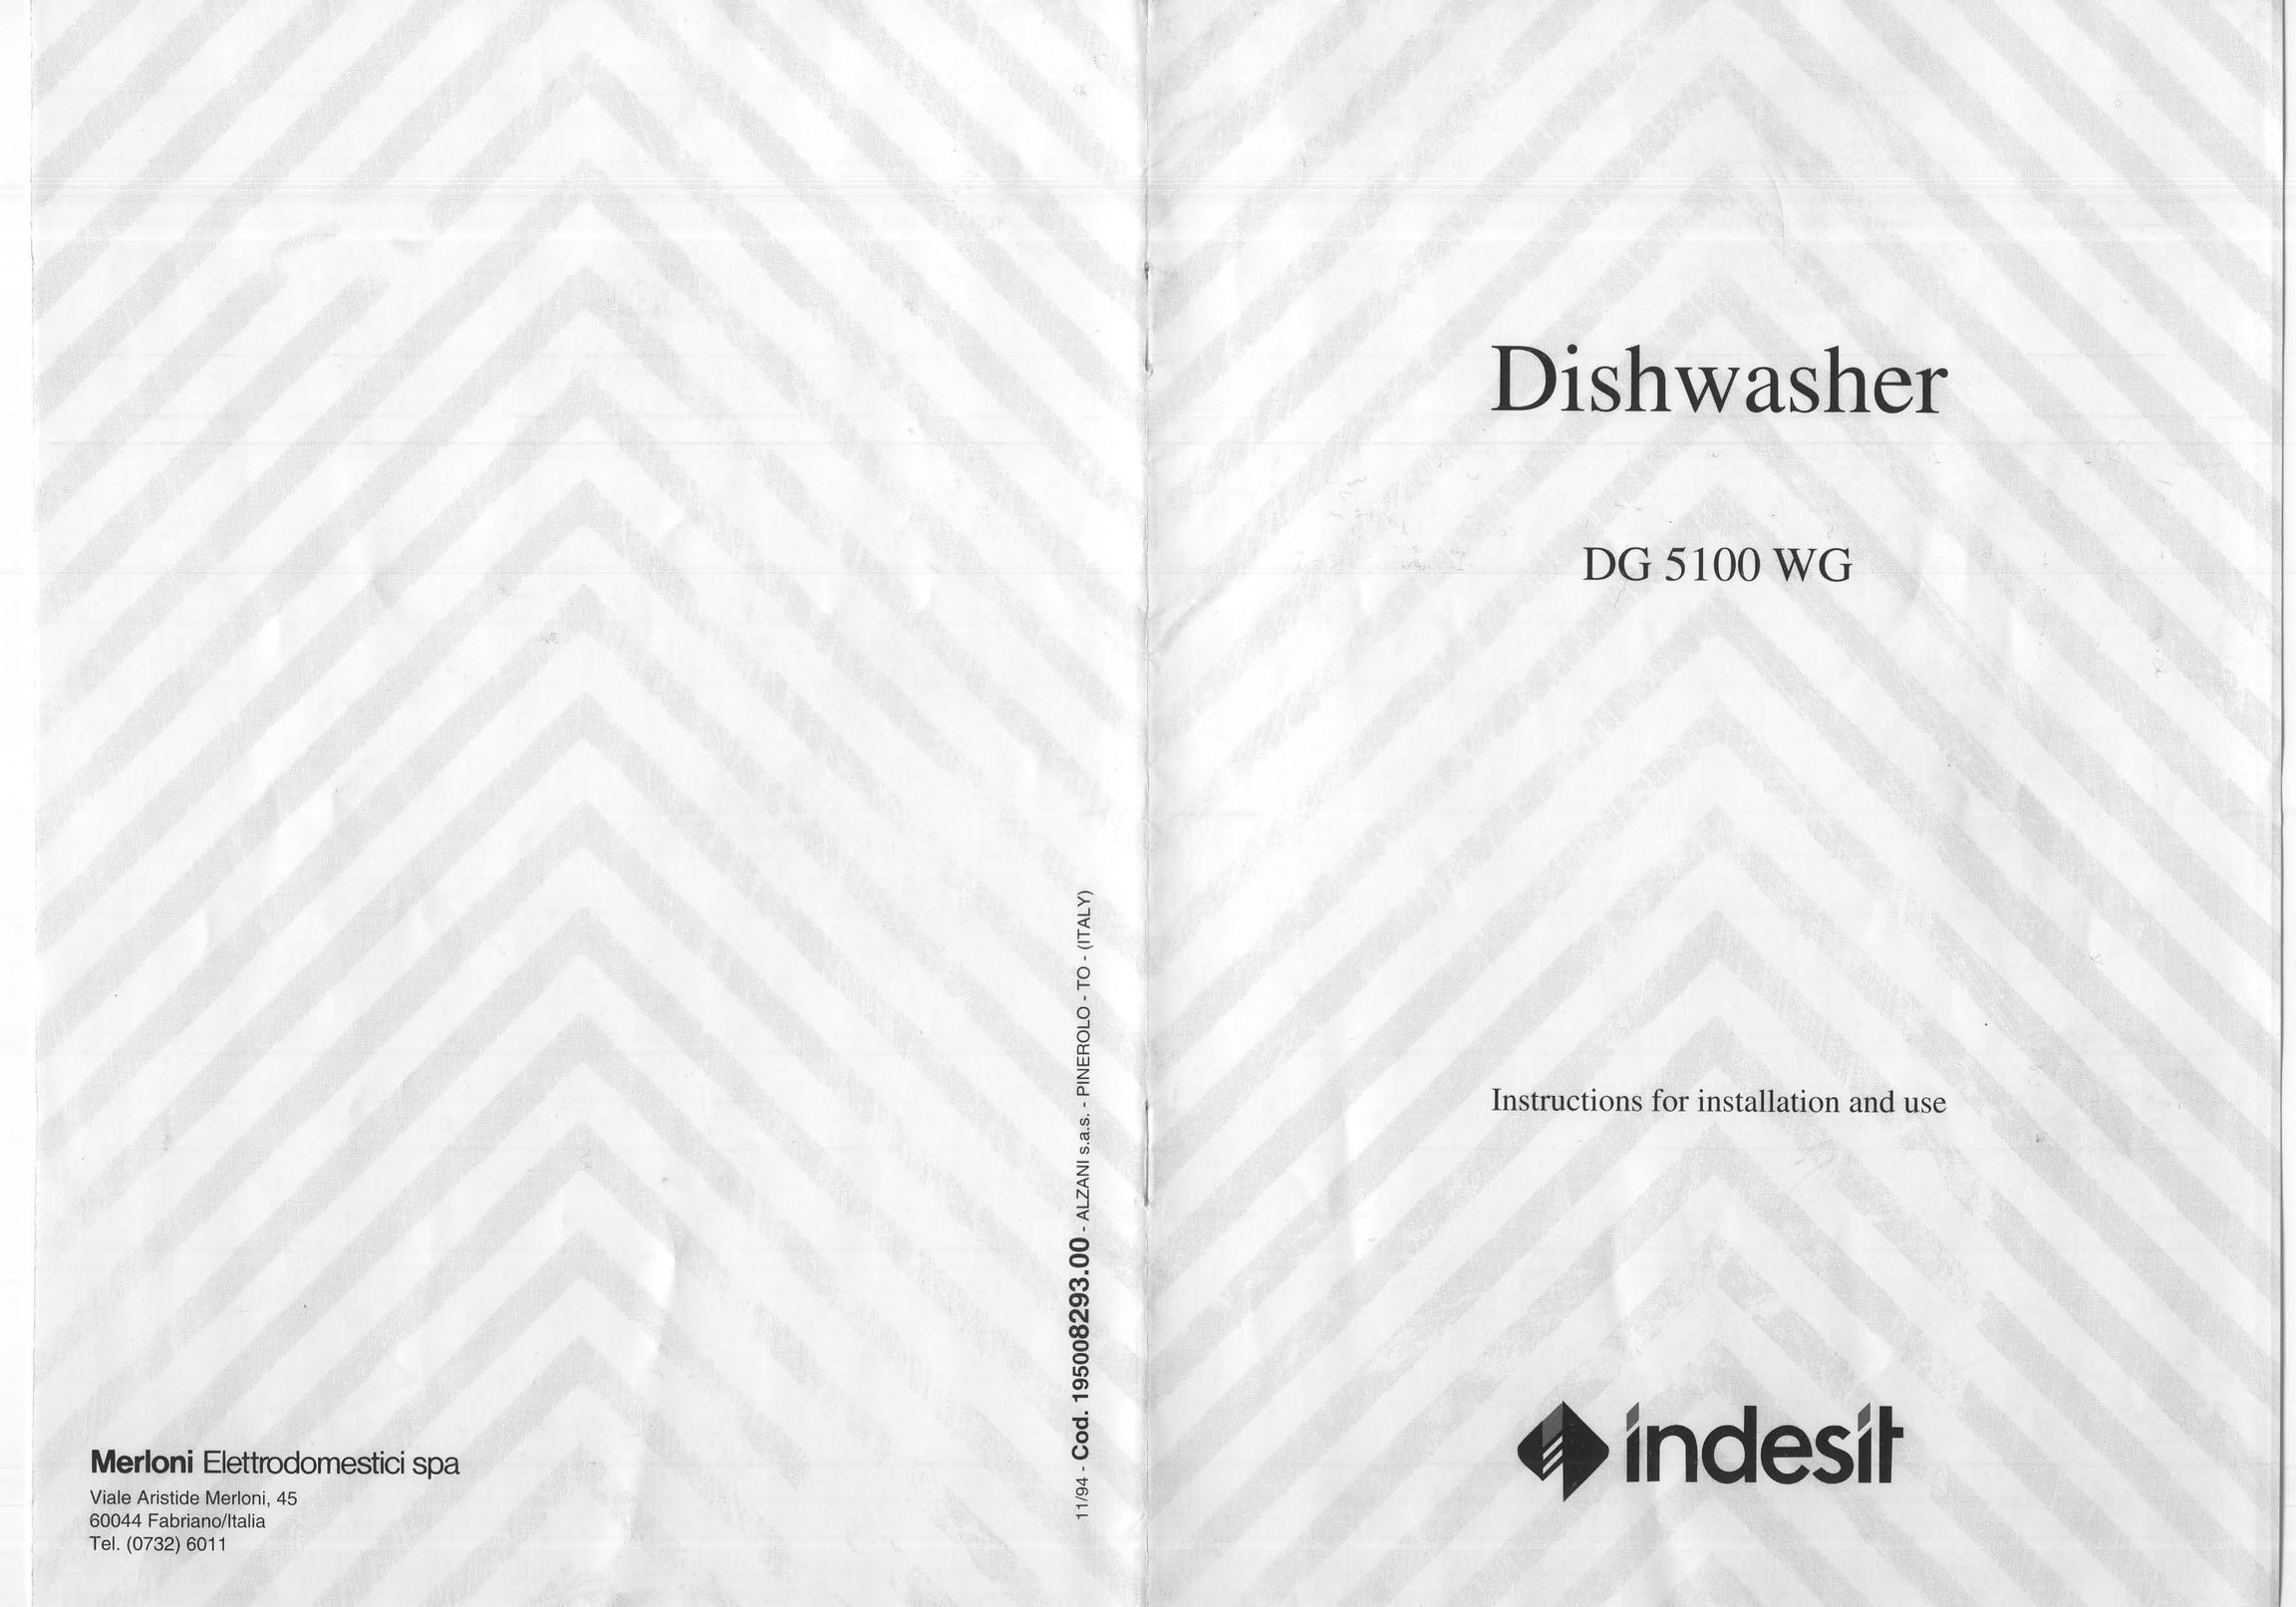 Indesit DG 5100 WG Dishwasher User Manual